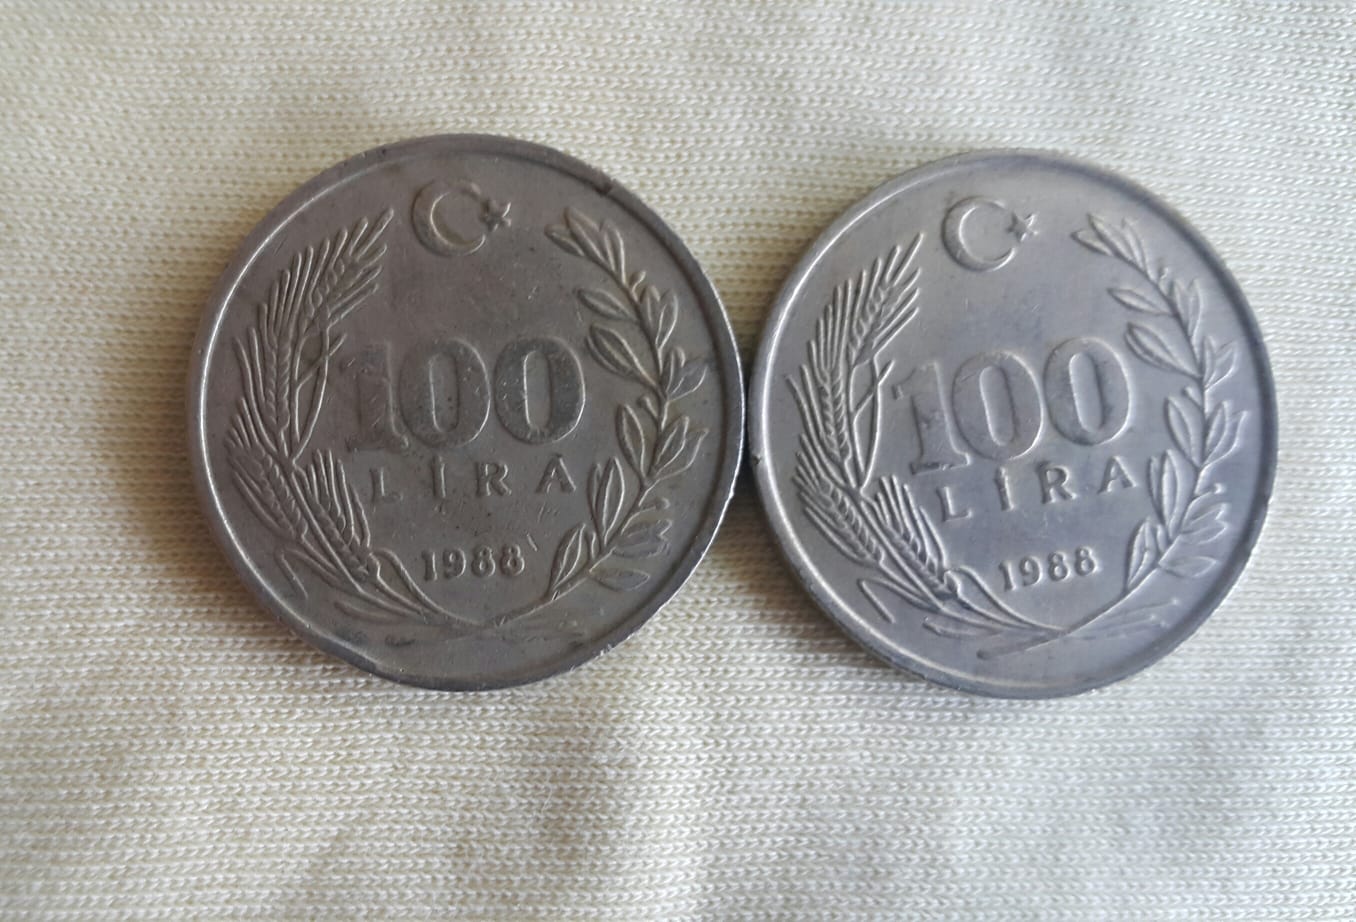 1988 Yılı Satılık 2 Adet Metal 100 Lira